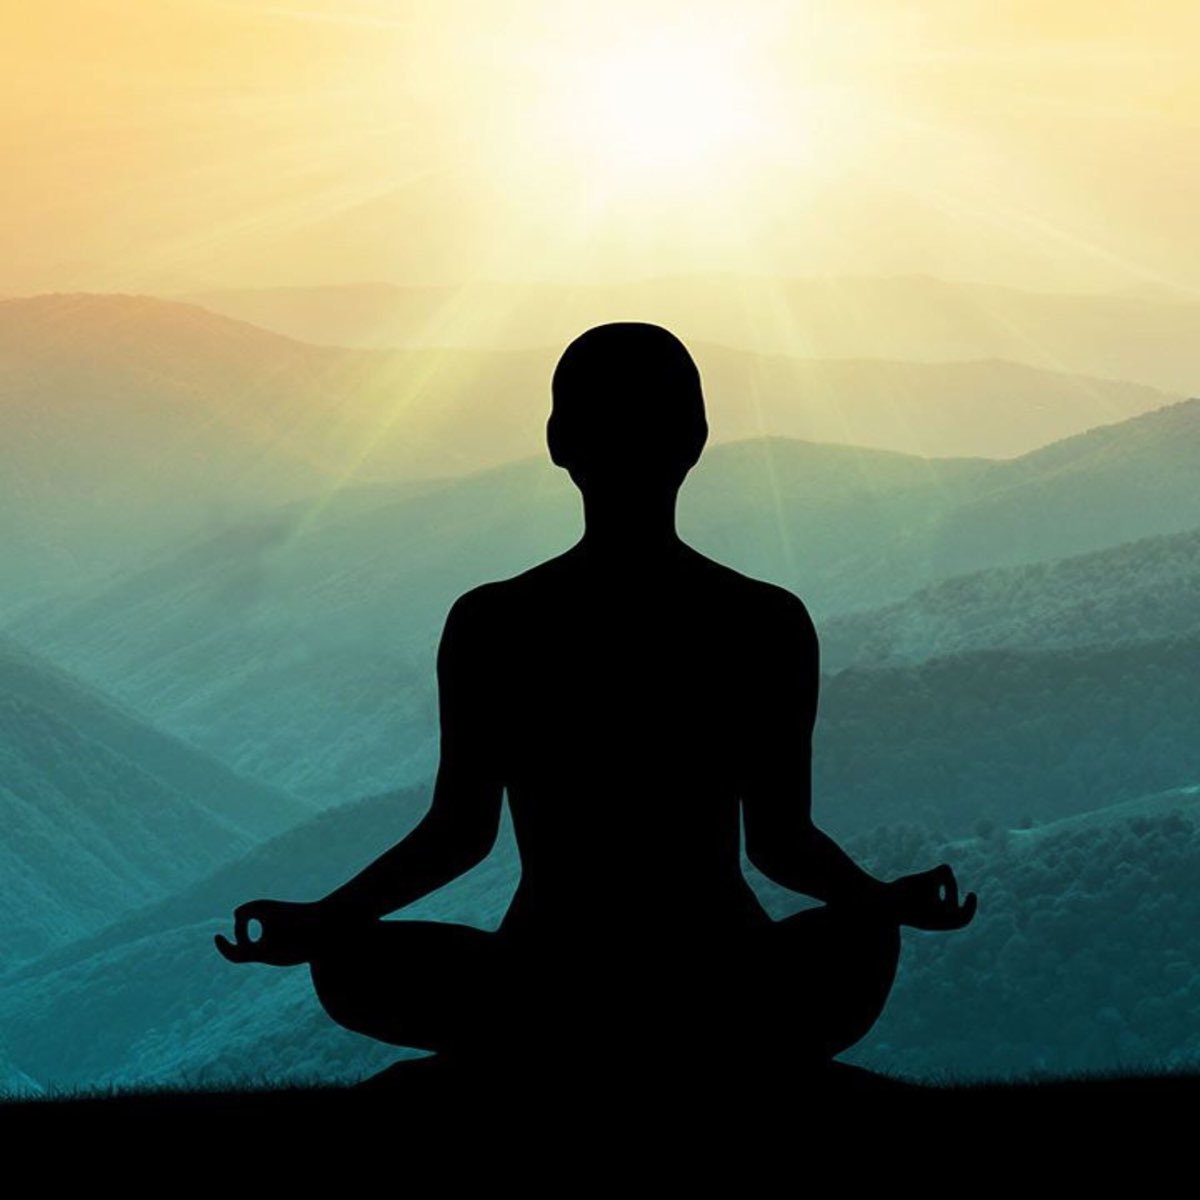 Включи медитация 10. Медитация Випассана. Медитация спокойствие. Медитация в одиночестве. Медитация путешествие в будущее.